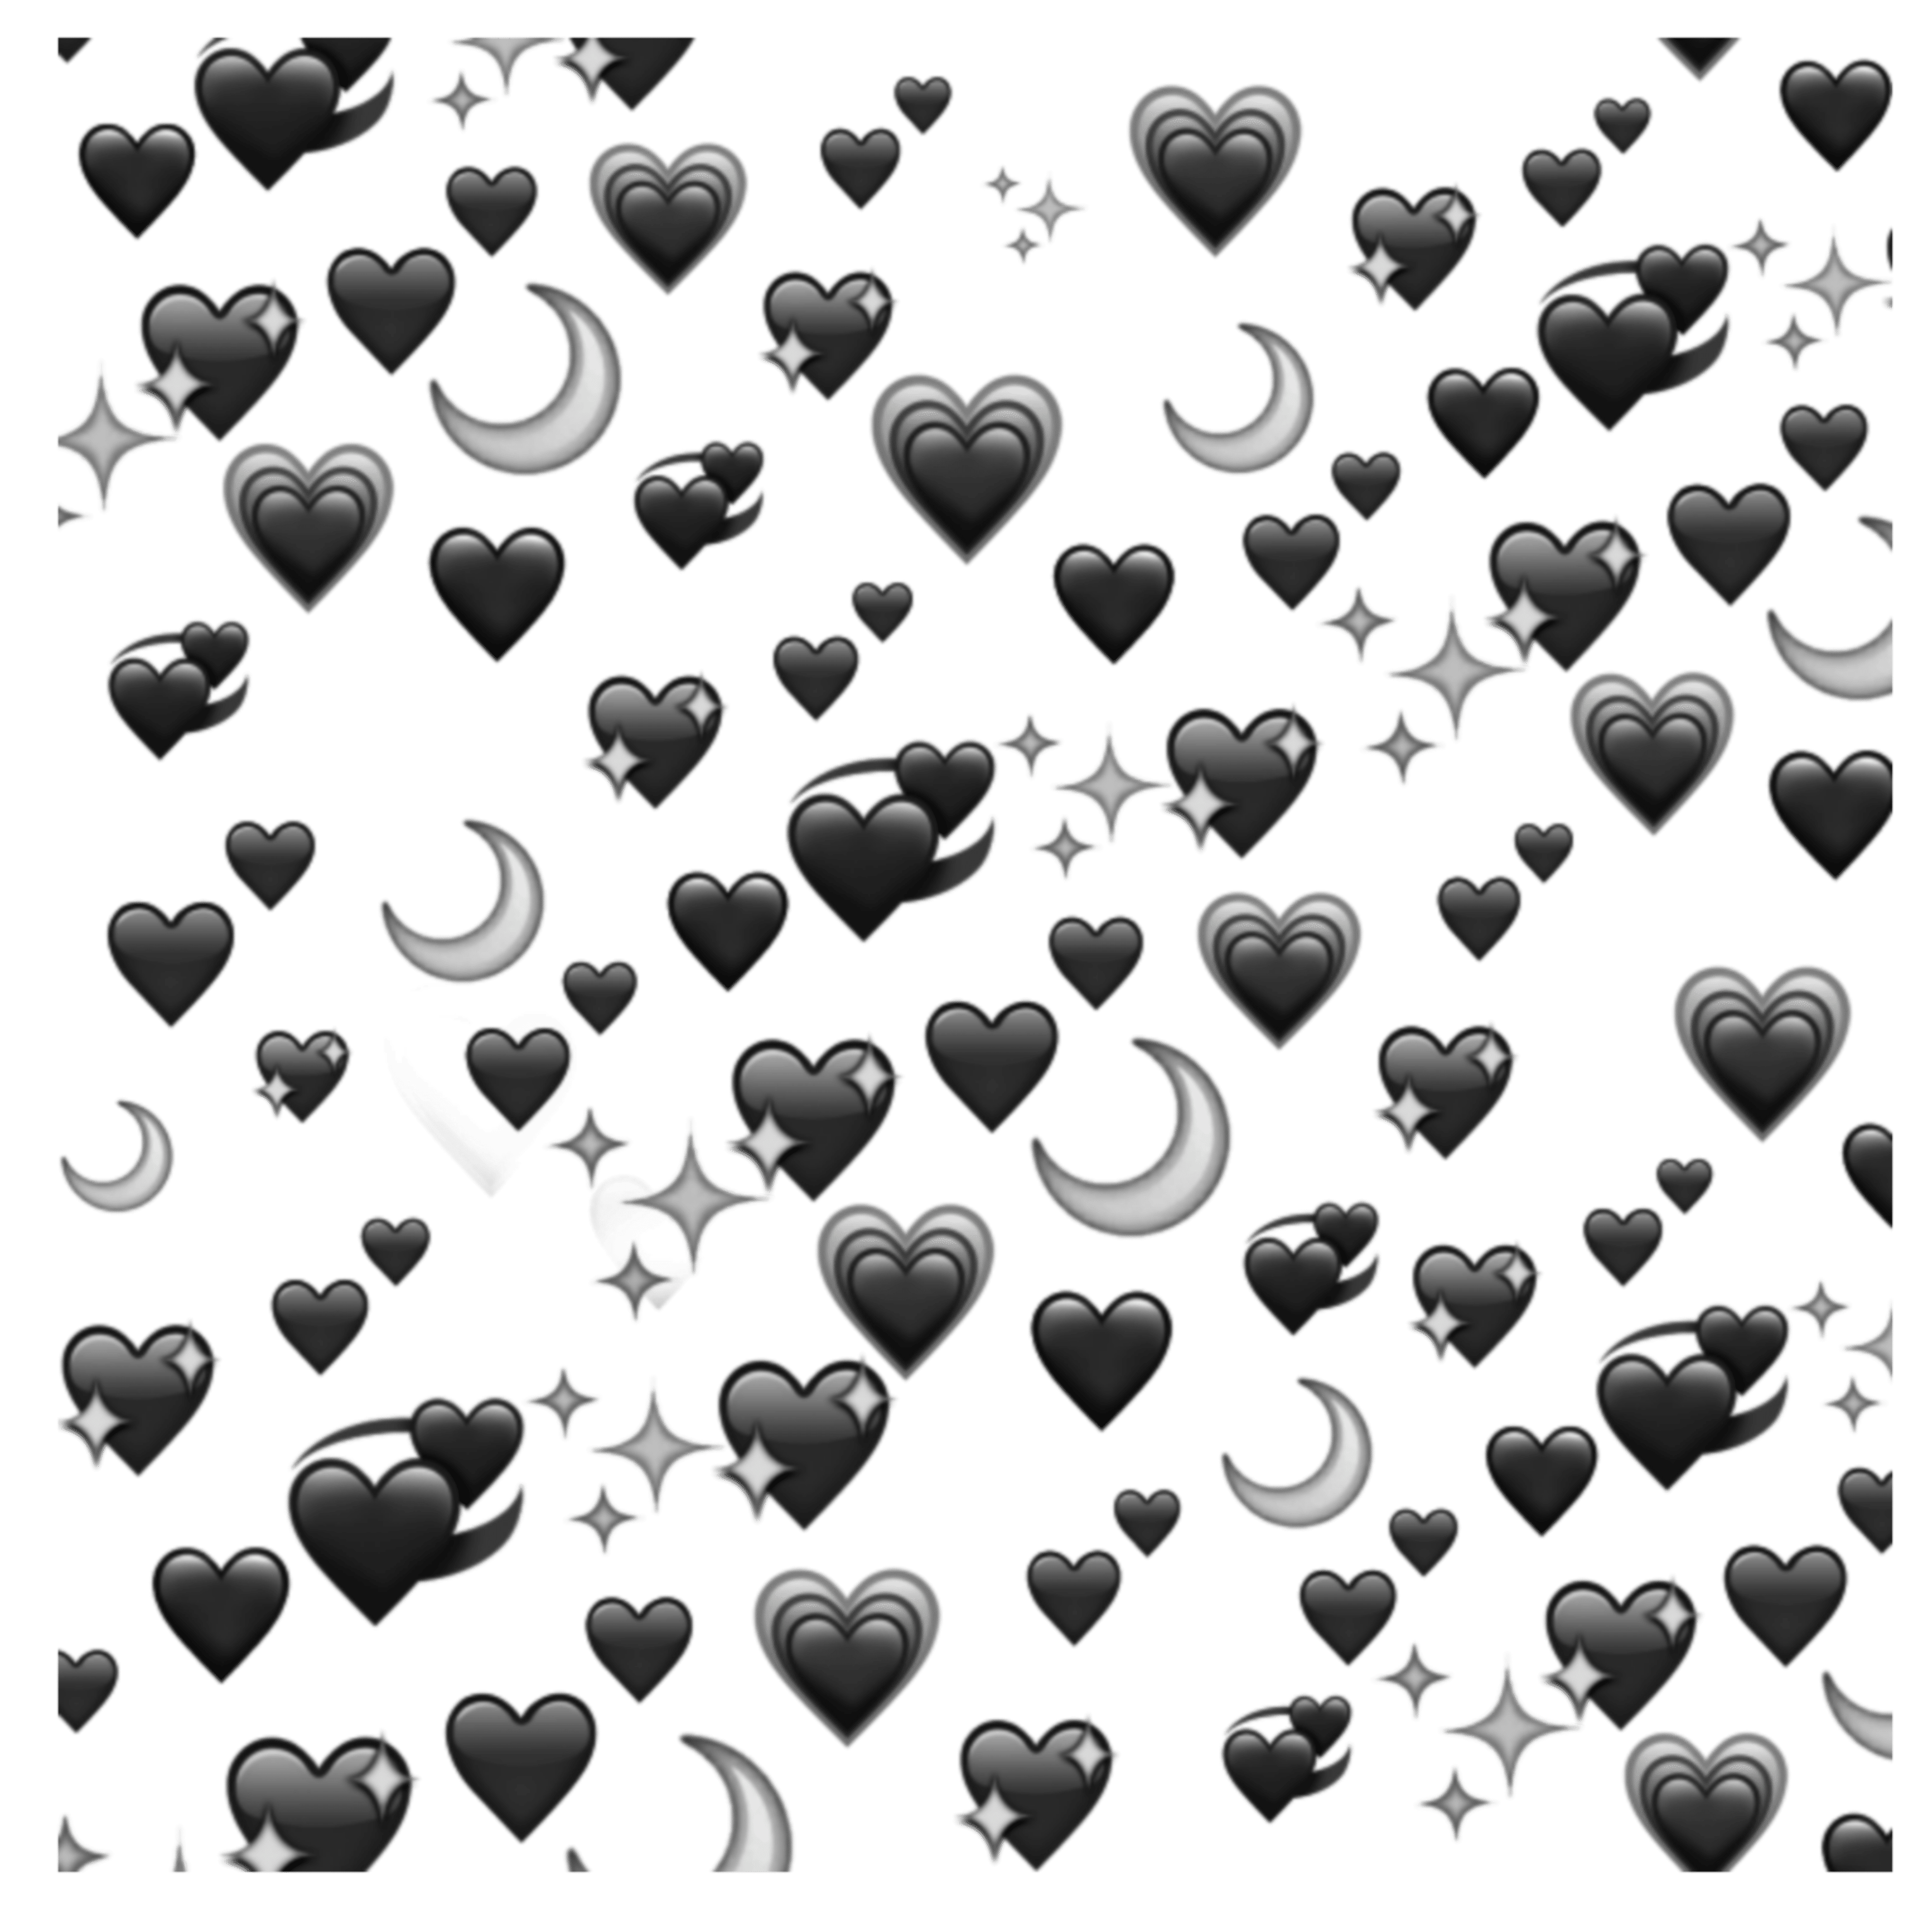 38900 Heart Emoji Stock Photos Pictures  RoyaltyFree Images  iStock   Red heart emoji Love heart emoji Heart emoji vector